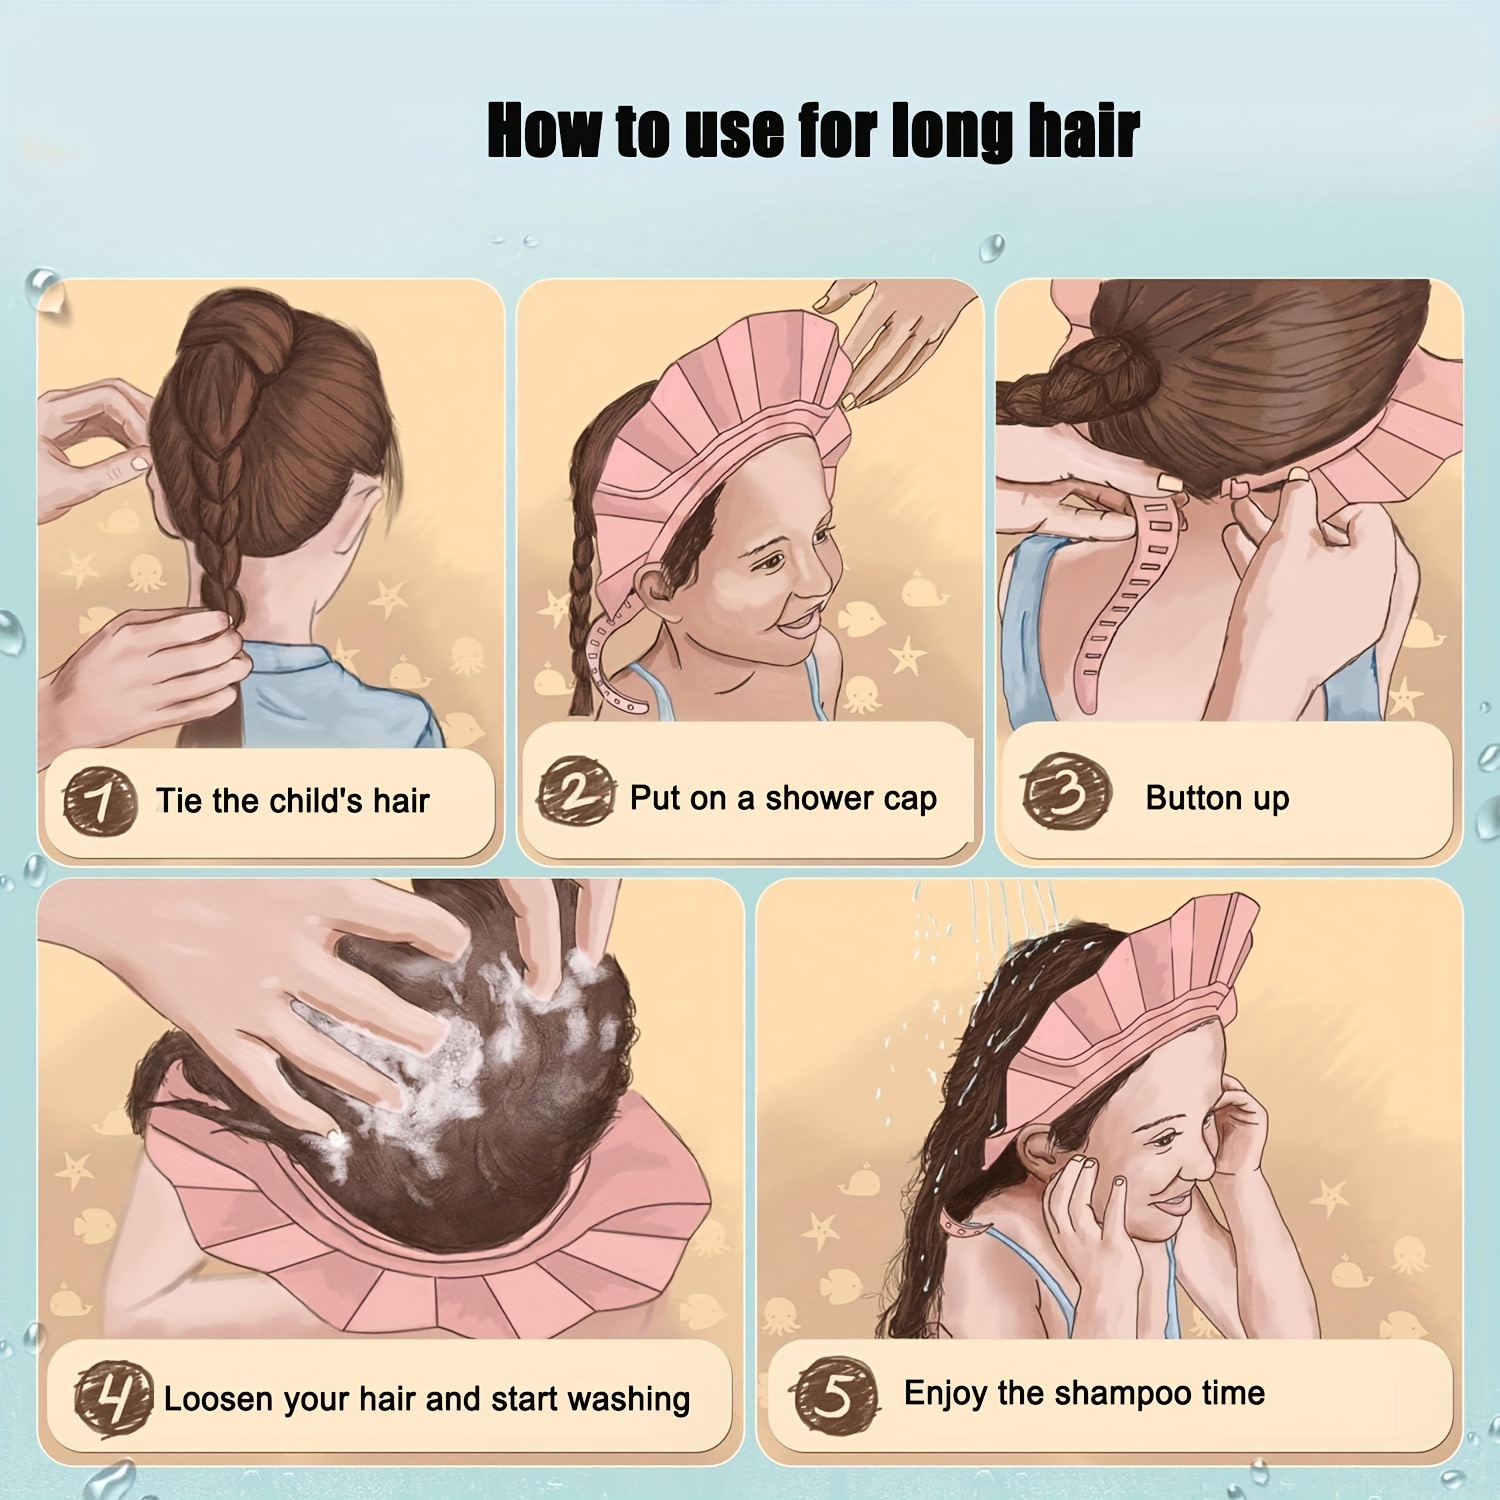 Lankey Gorro suave para ducha de bebé, gorro ajustable suave para ducha de  bebé para lavar el cabell Lankey Gorro de ducha para niños